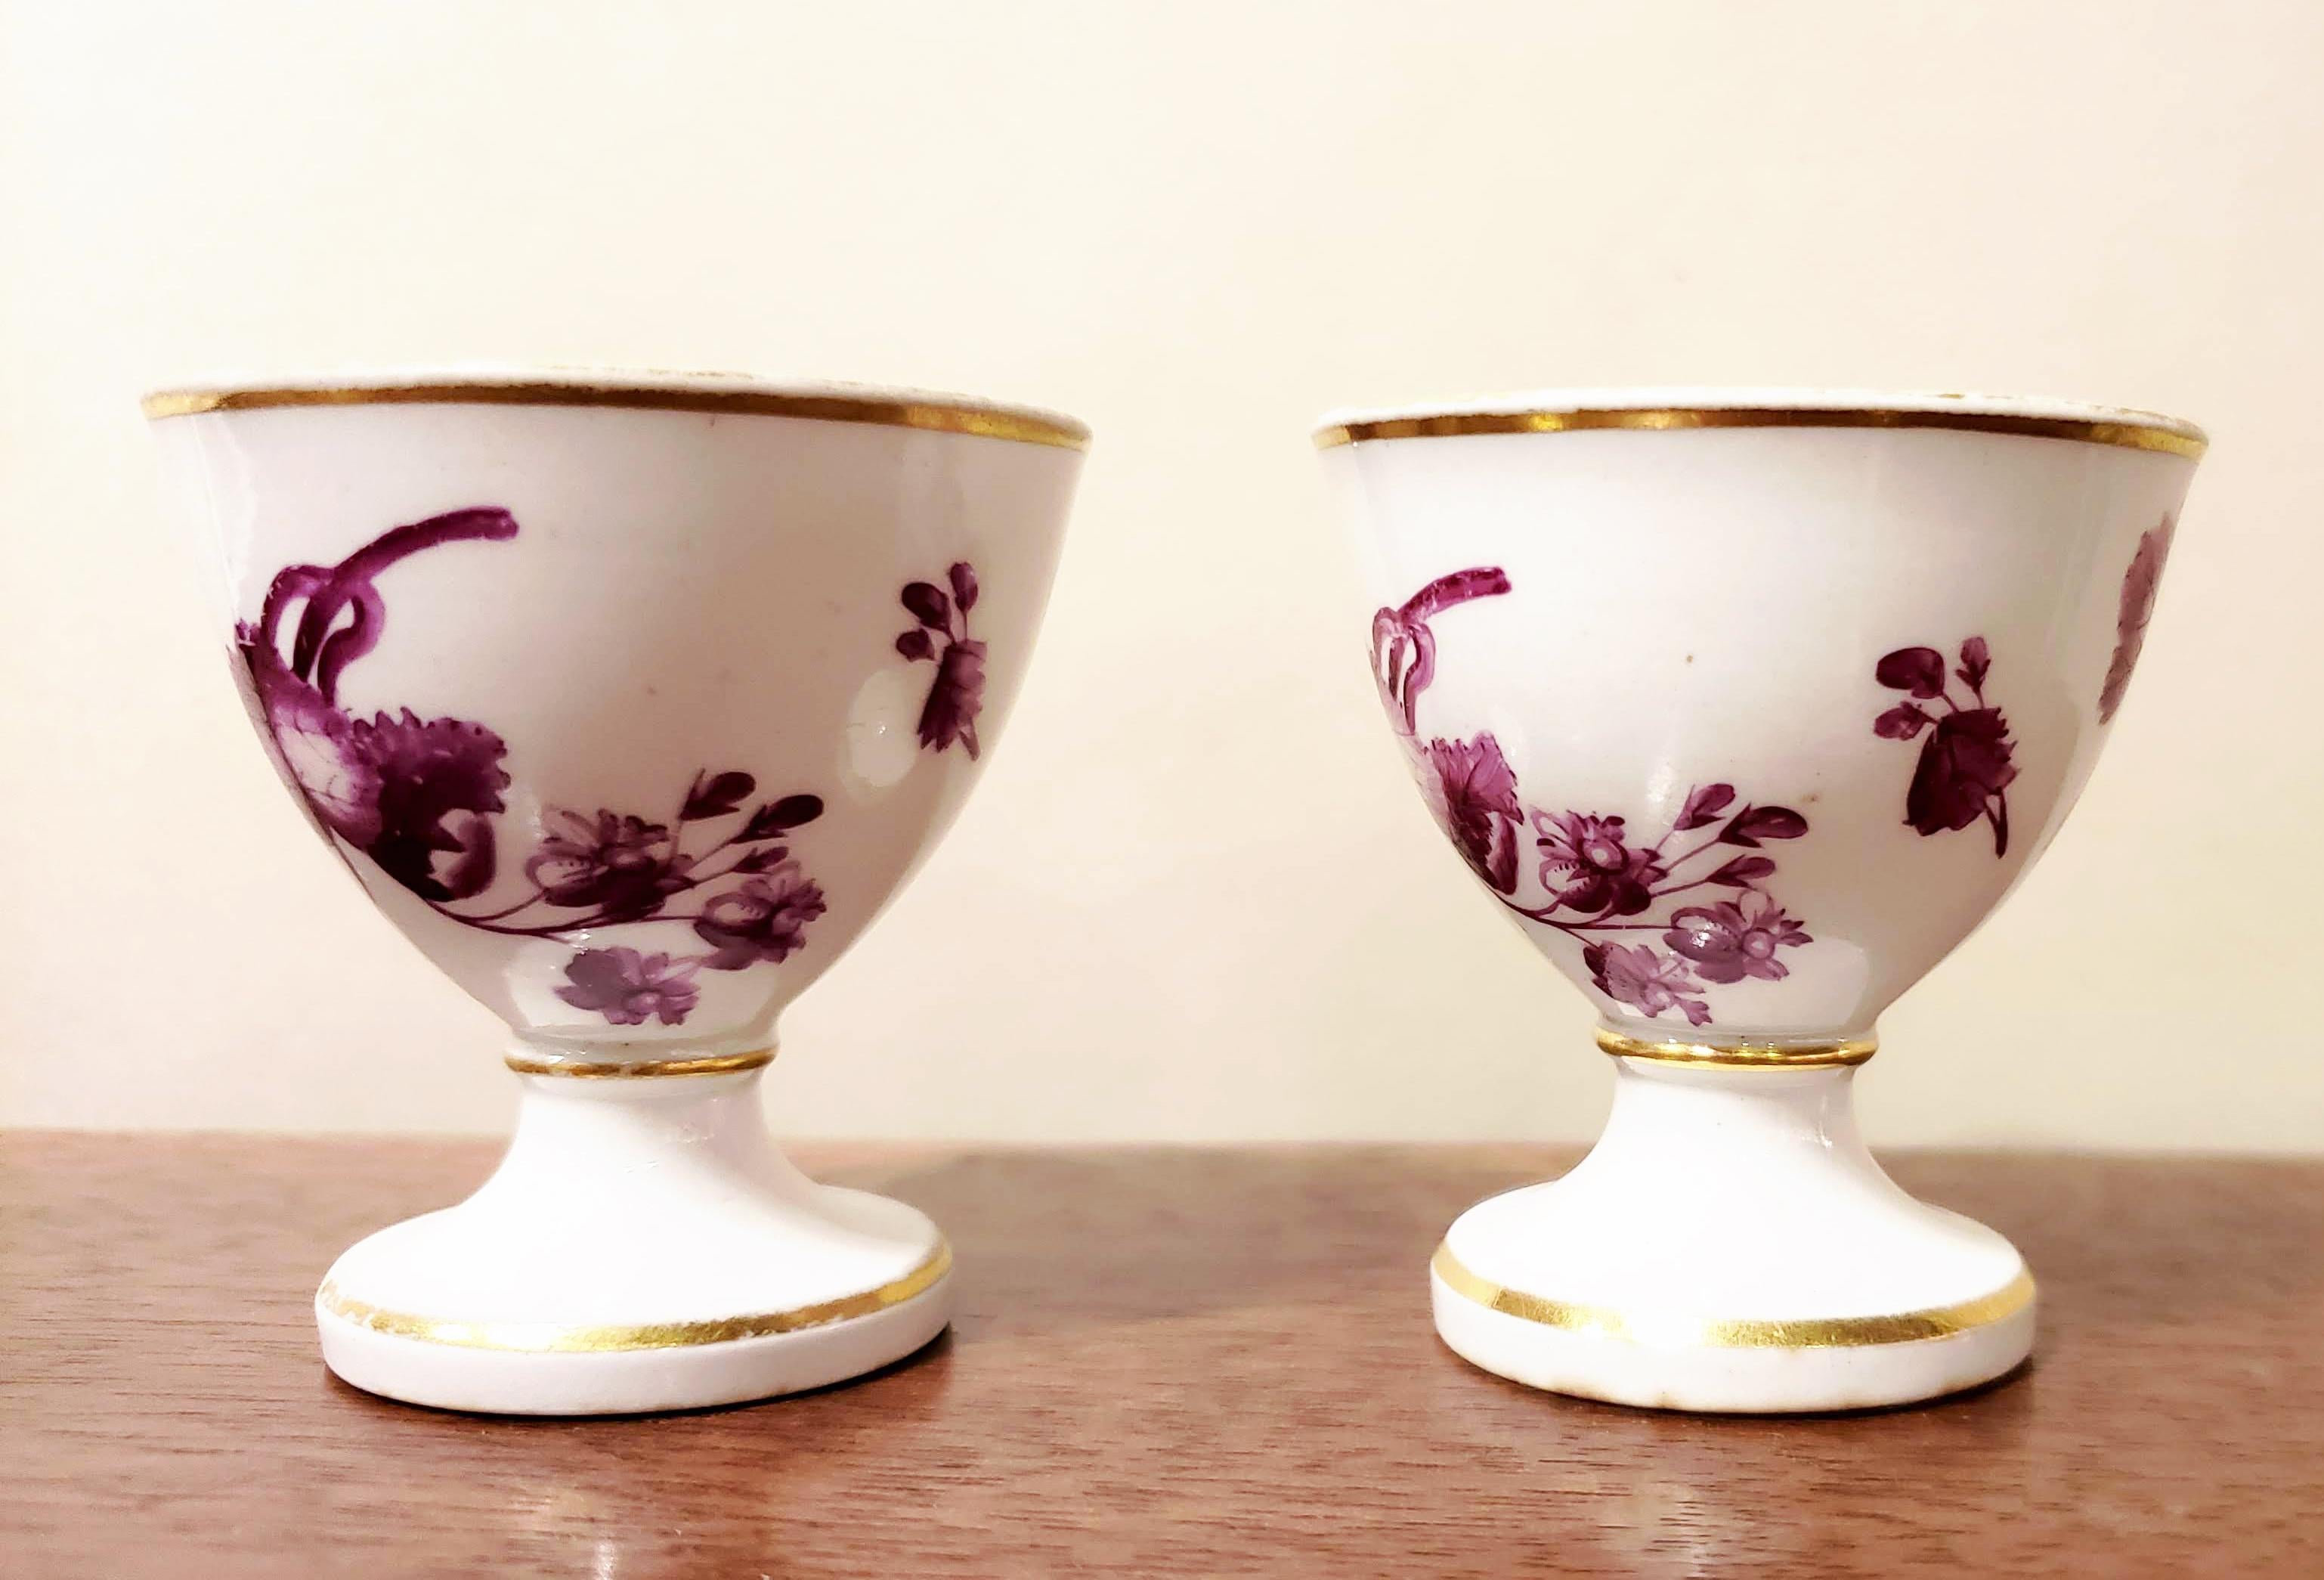 Regency Flight, Barr & Barr Worcester Porcelain Egg Cups with Puce Flowers